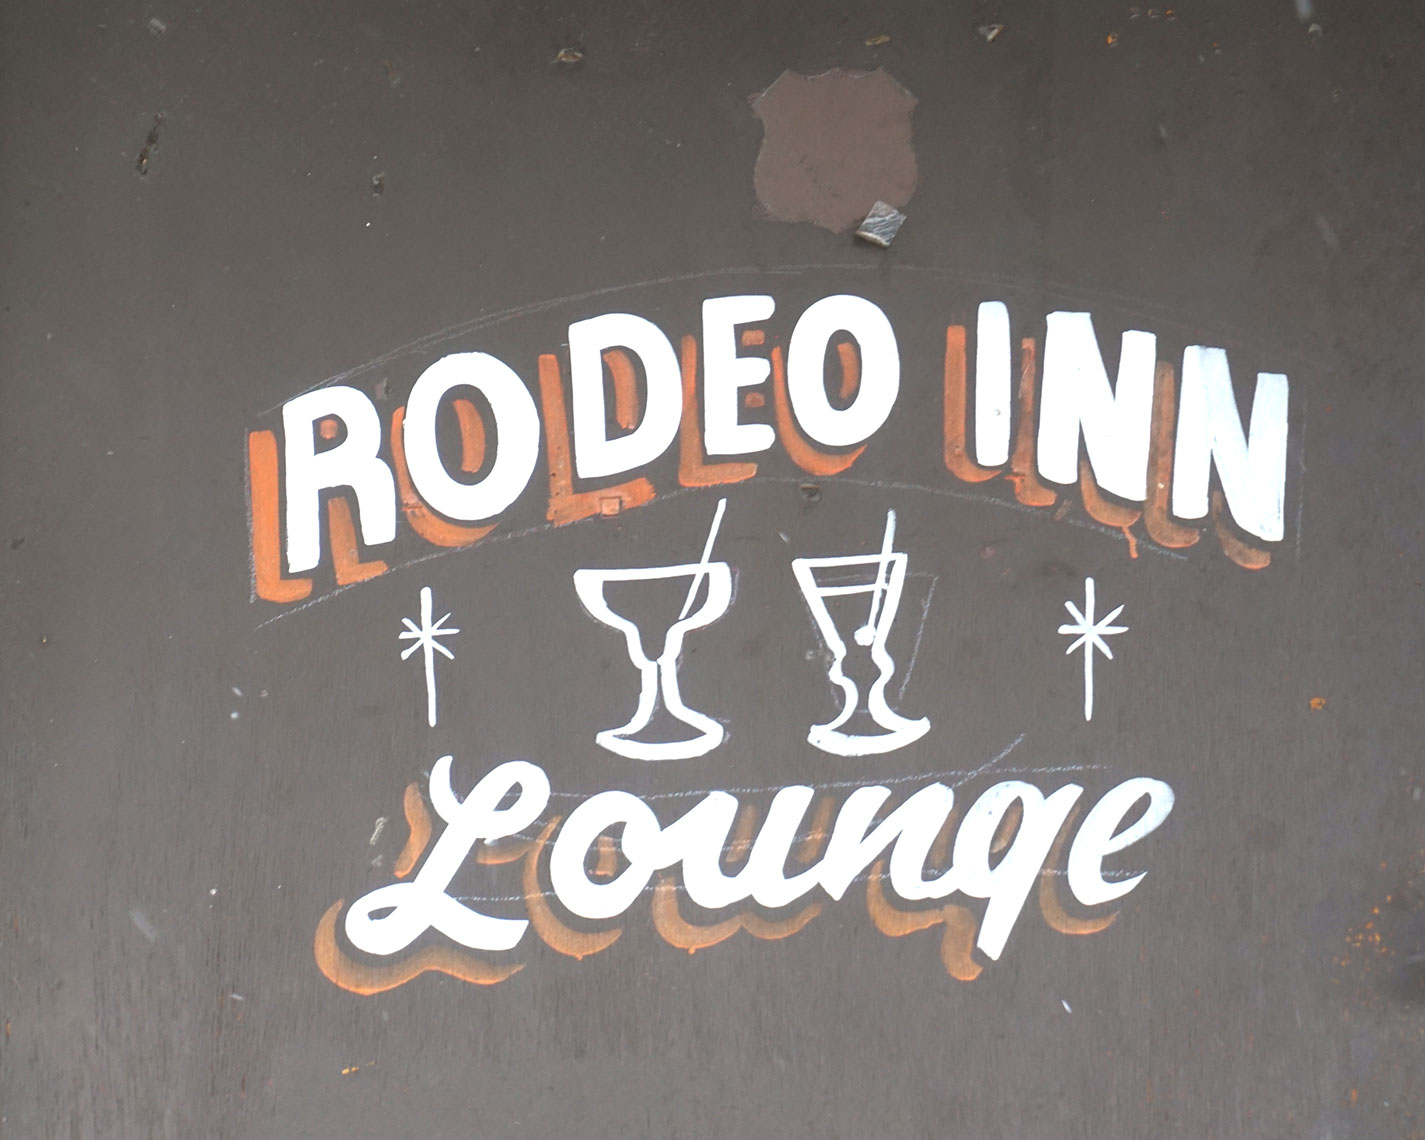 Rodeo Inn Sign